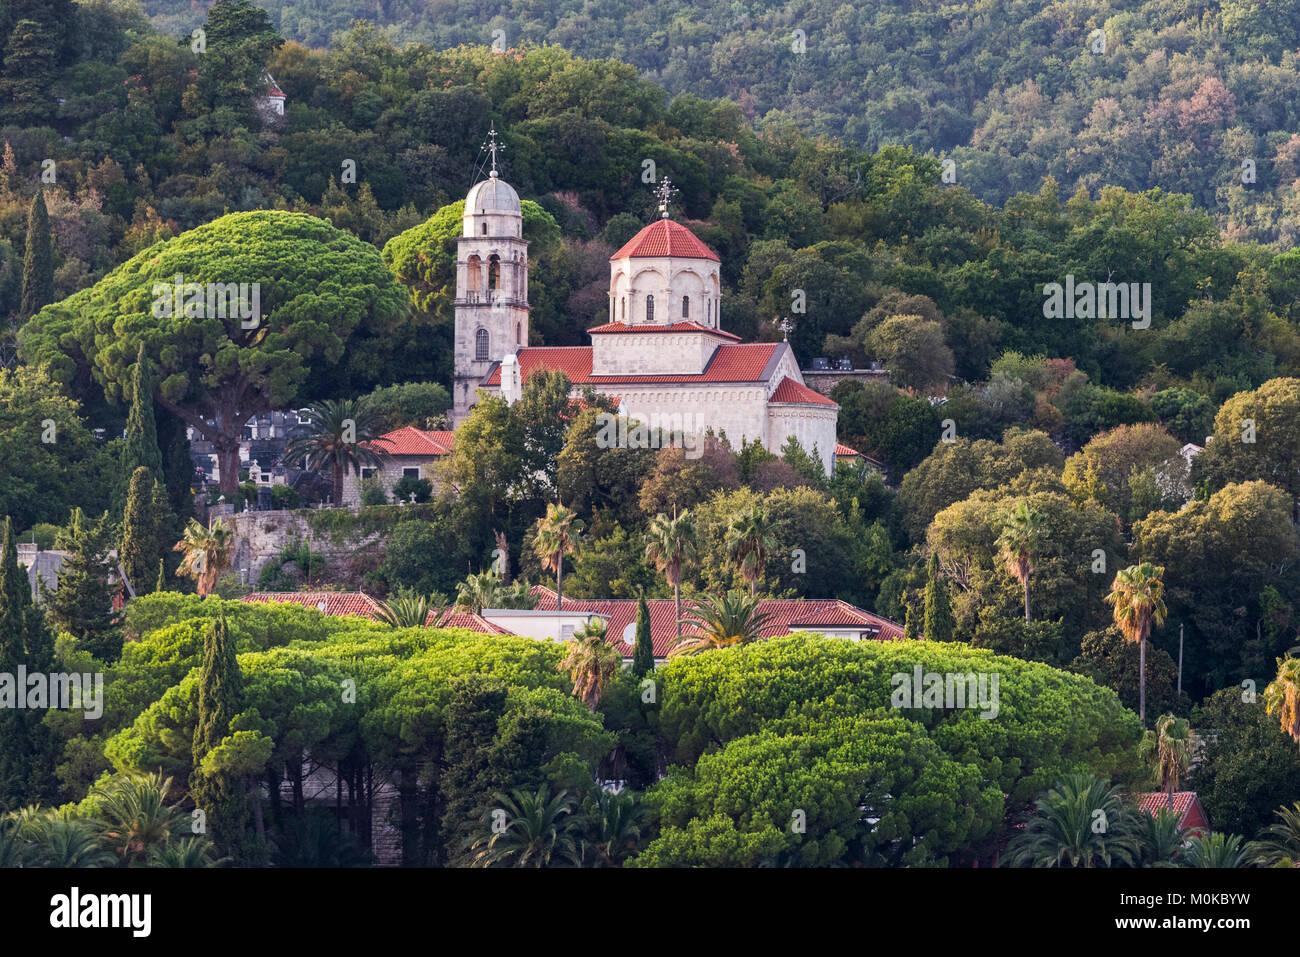 Une église et des bâtiments sur une colline entourée d'arbres ; Herceg Novi, Monténégro Banque D'Images